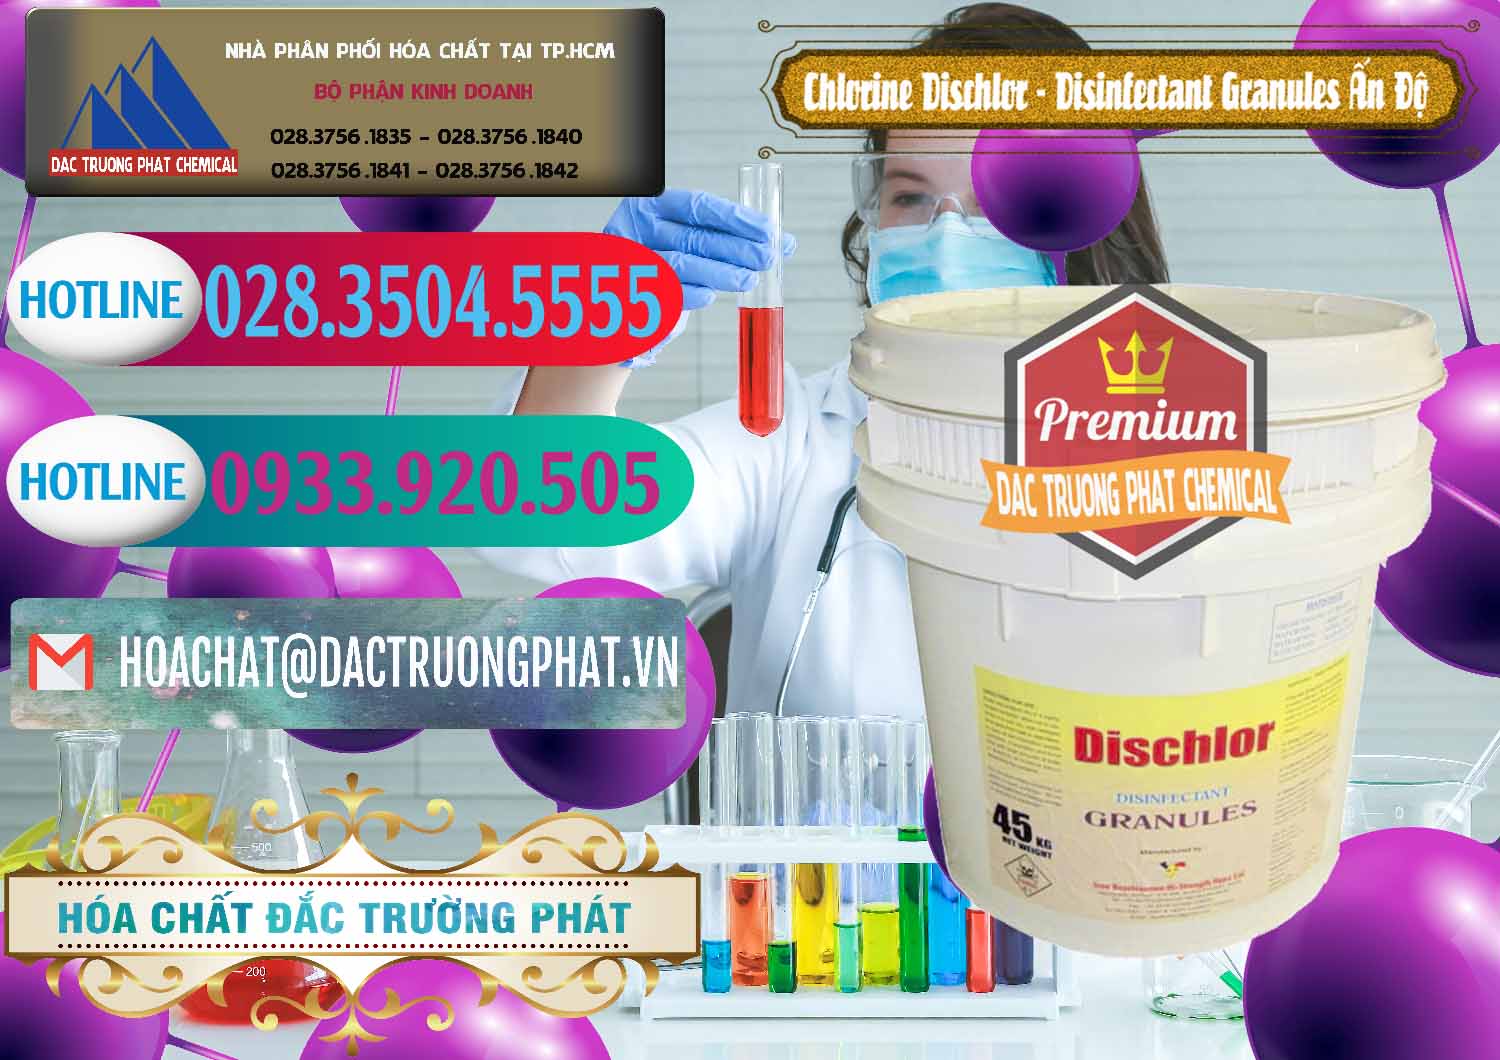 Đơn vị kinh doanh ( bán ) Chlorine – Clorin 70% Dischlor - Disinfectant Granules Ấn Độ India - 0248 - Phân phối - kinh doanh hóa chất tại TP.HCM - truongphat.vn